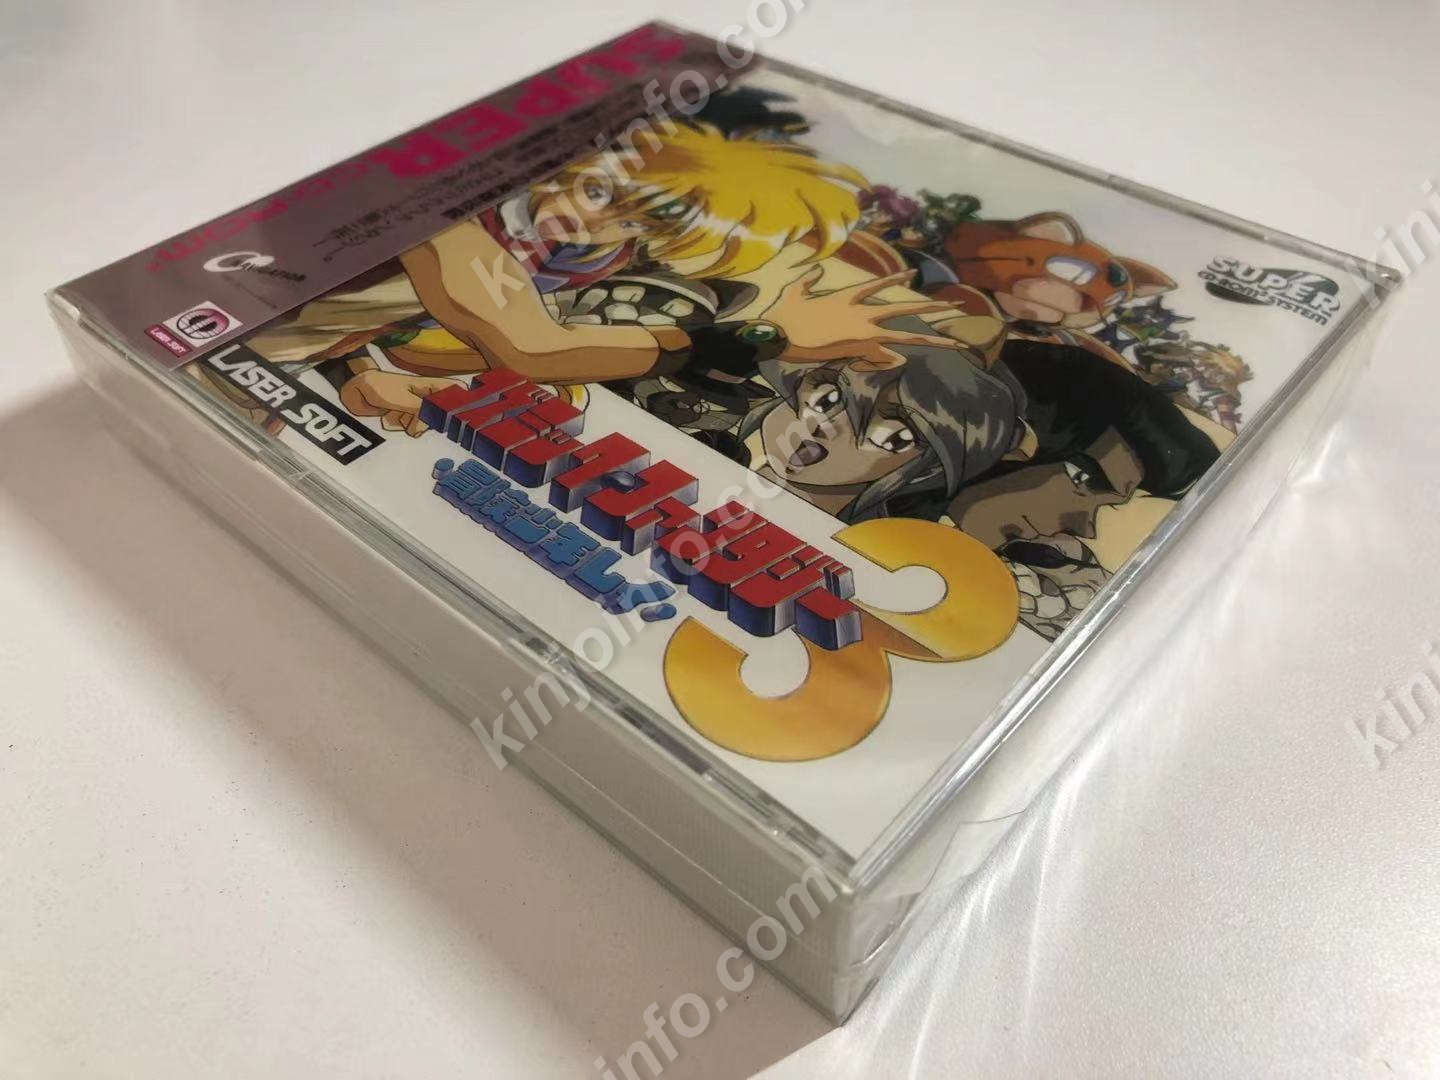 コズミック・ファンタジー3 冒険少年レイ【新品・PCE通常版・日本版】 / kinjoinfo